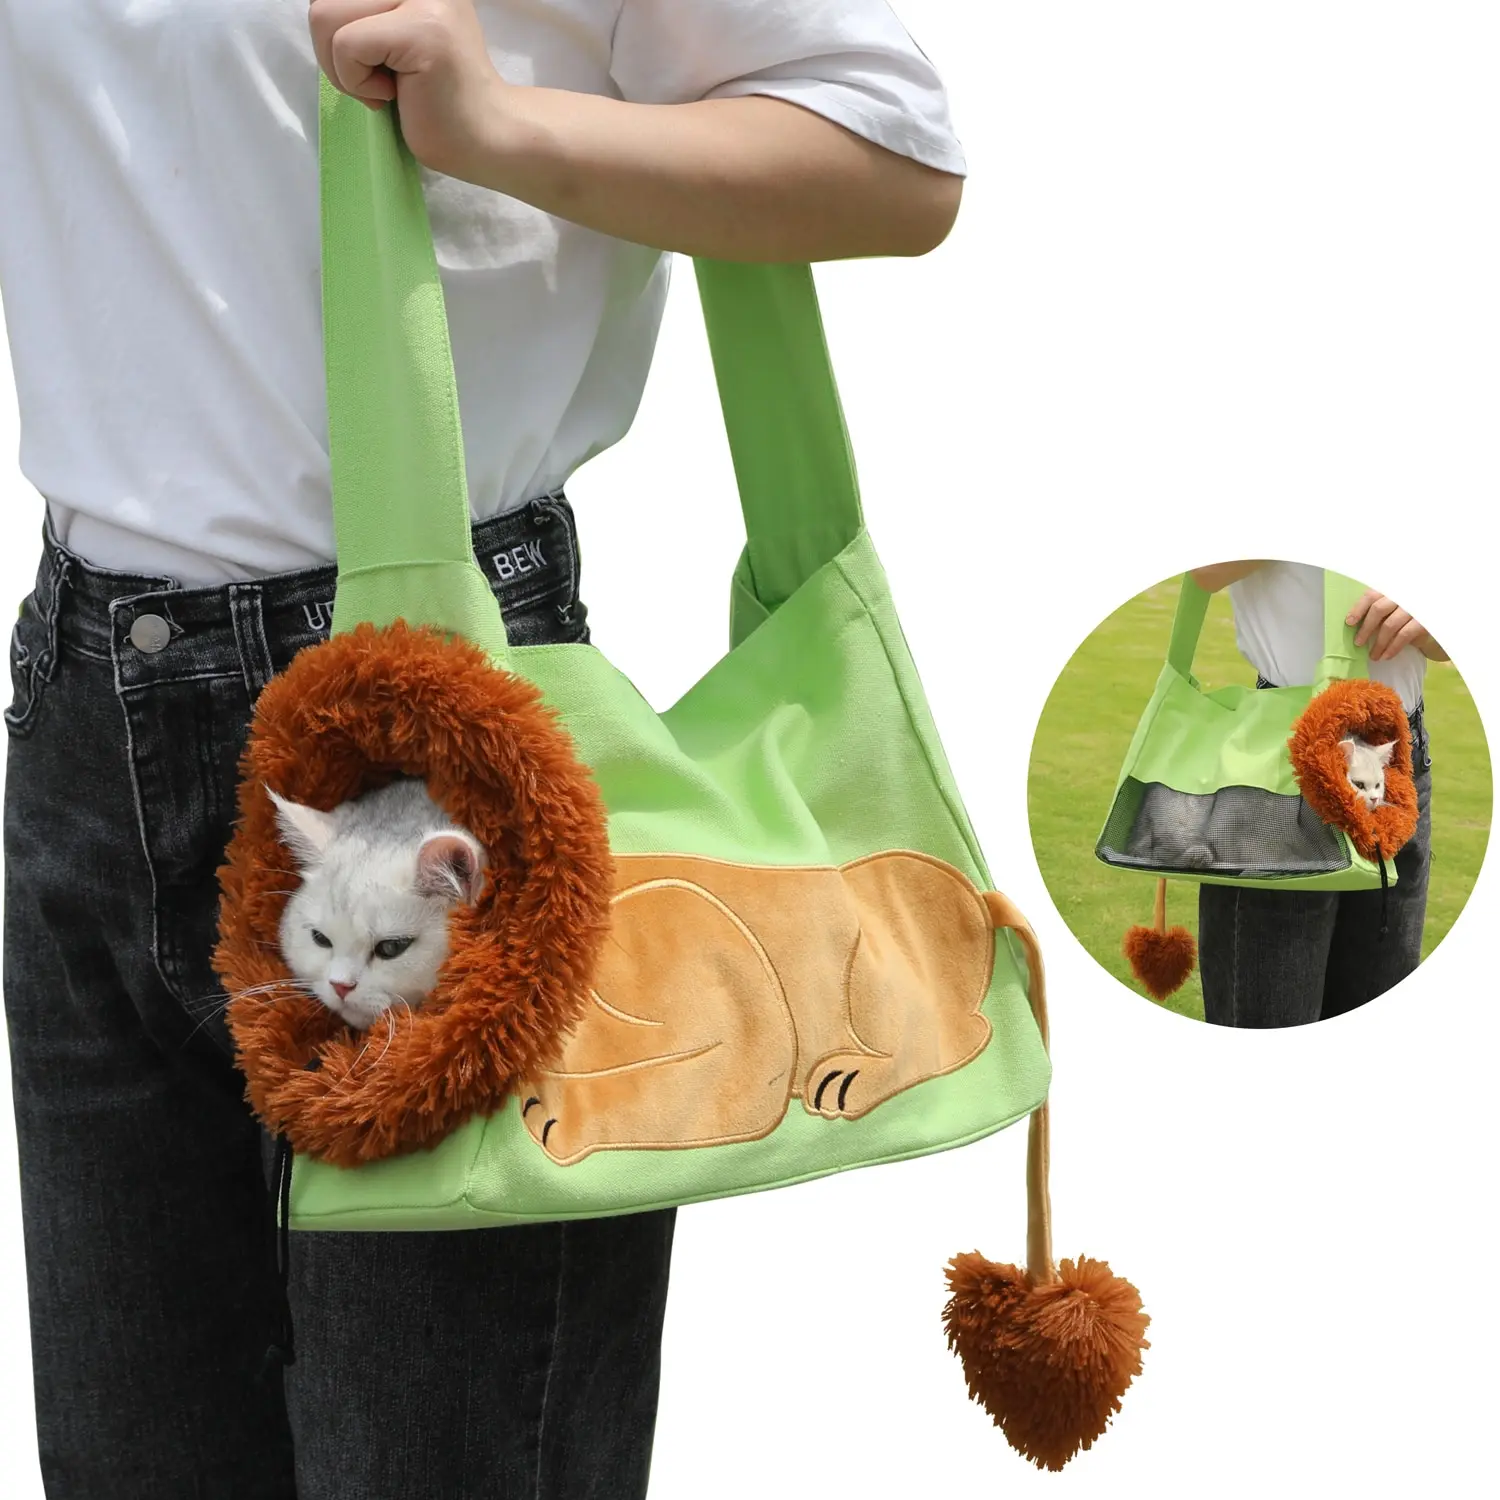 

Pet Carriers Lion Design Portable Breathable Bag Cat Dog Carrier Bags Outgoing Travel Pets Handbag Pet Shoulder Carrying Bags